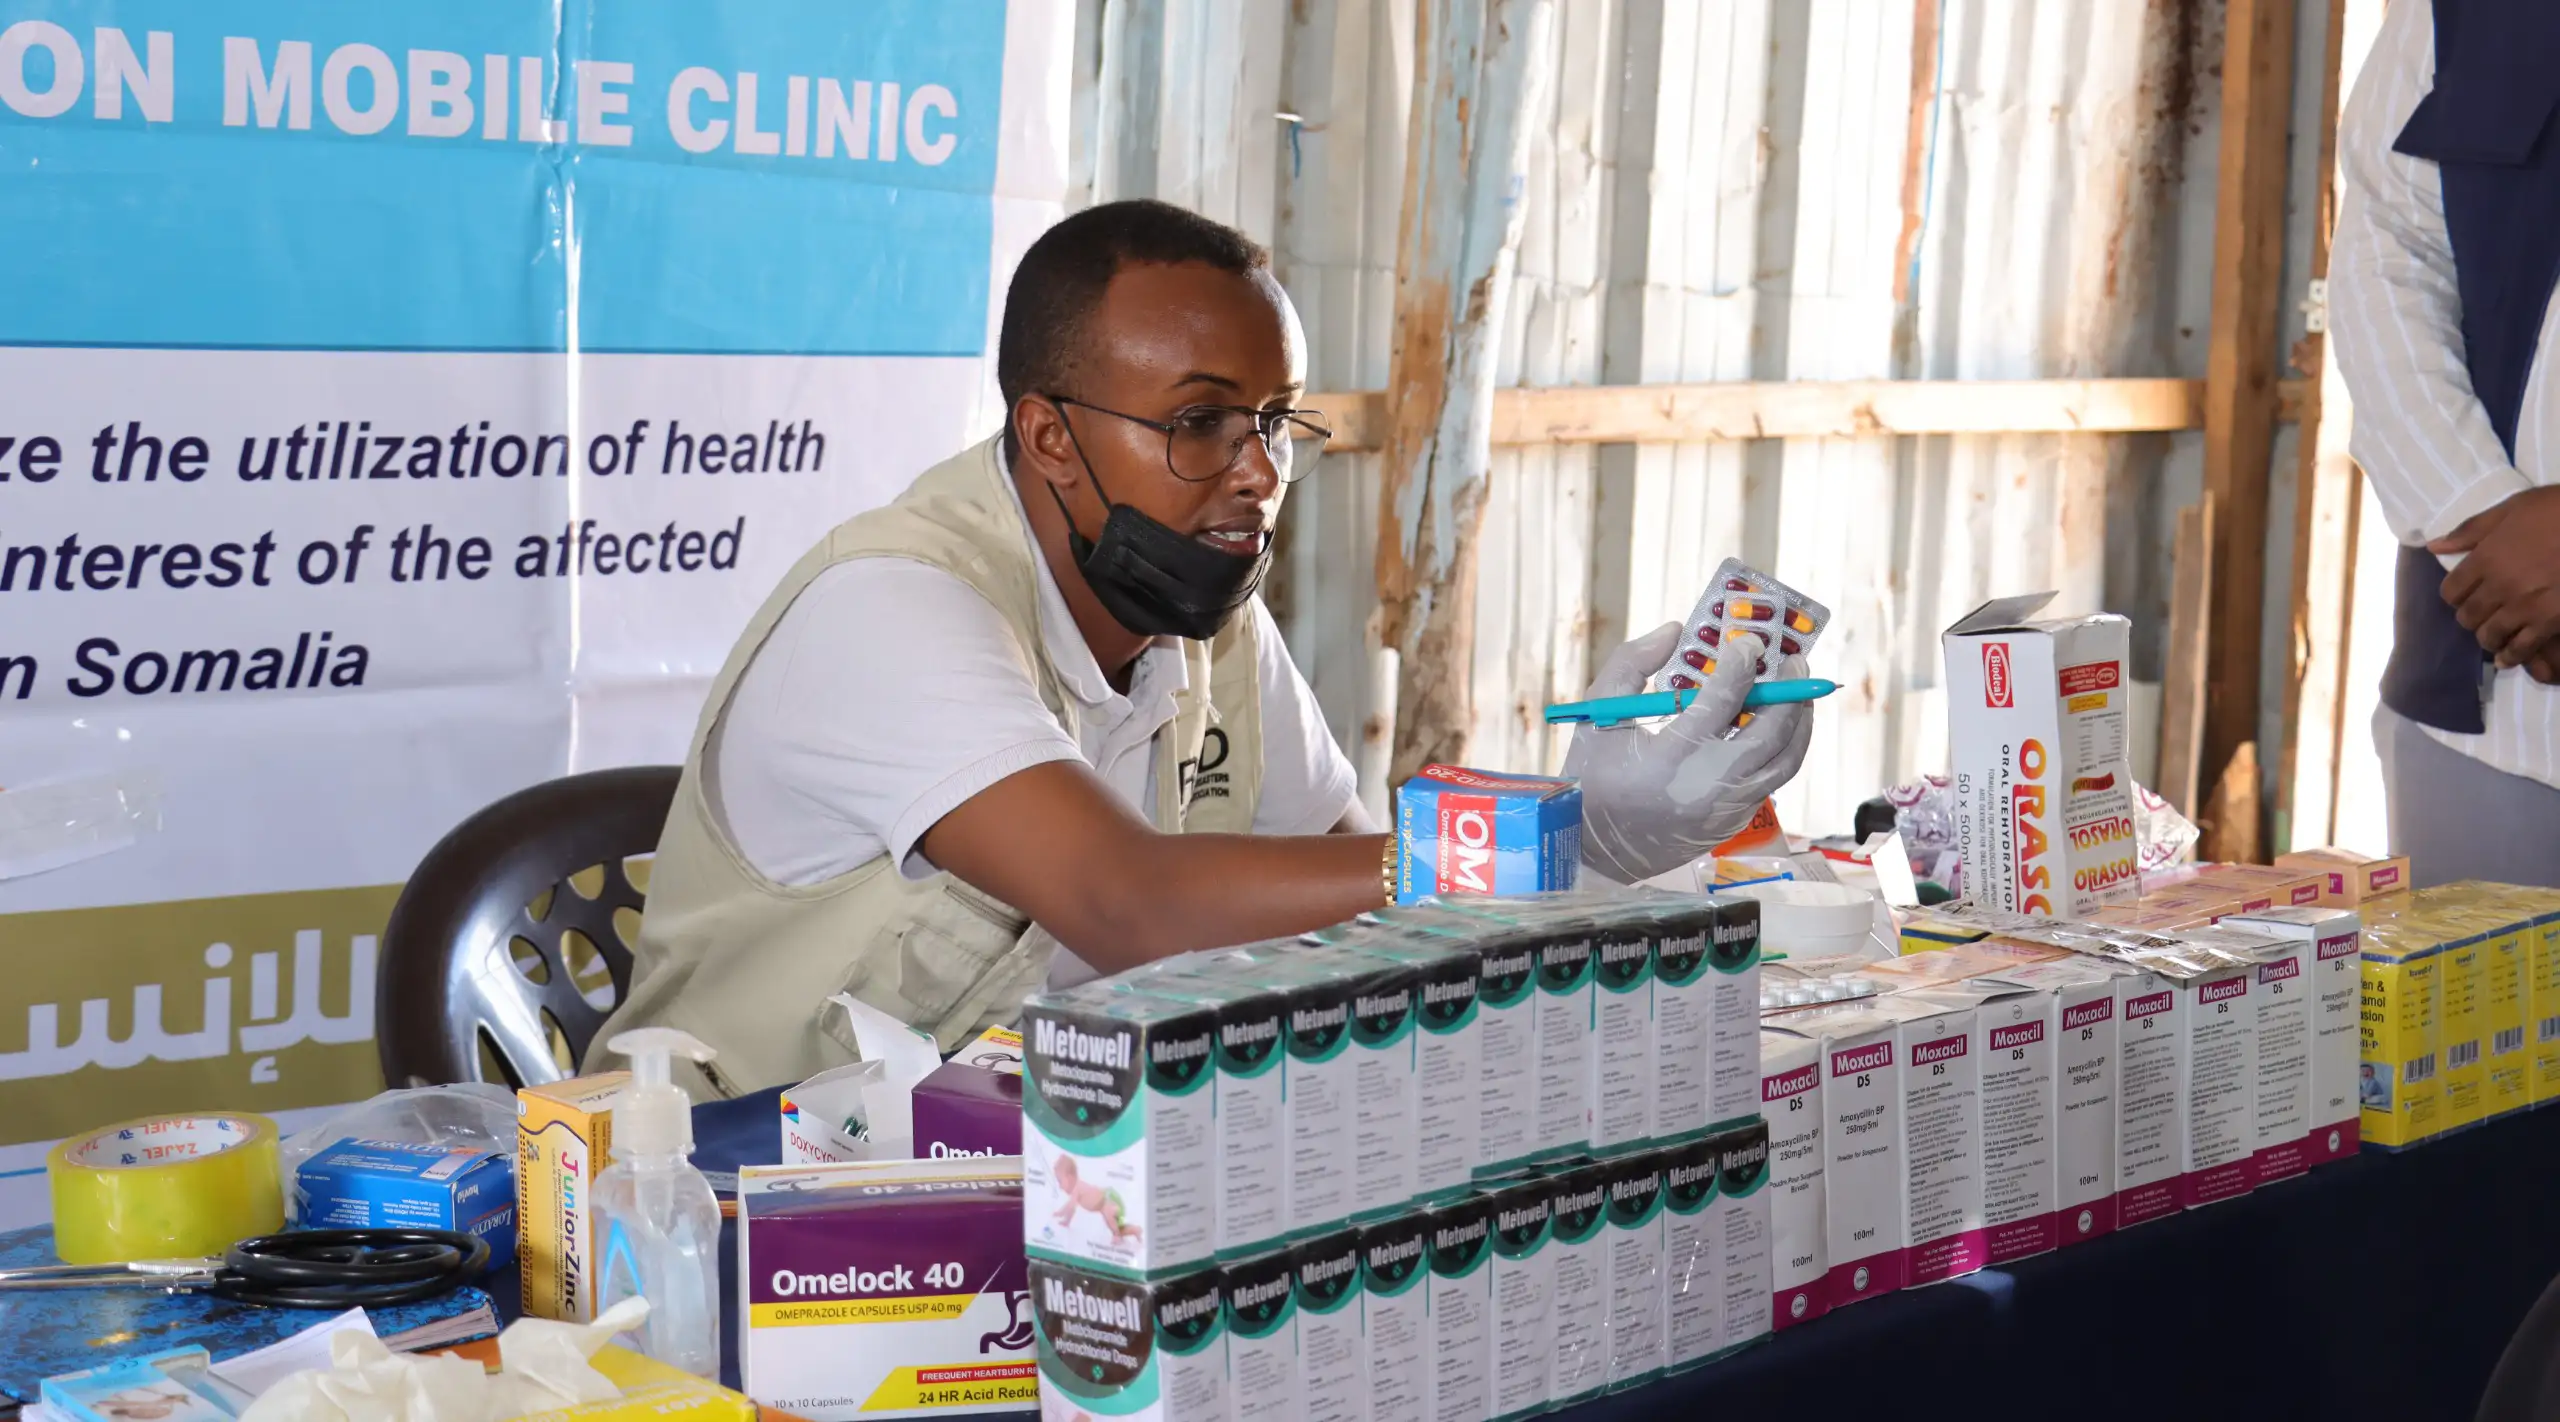 منظمة الأمين تطلق عيادتين متنقلتين لتقديم الخدمات الطبية والتغذية في منطقة دينيلي التابعة لمقديشو - الصومال